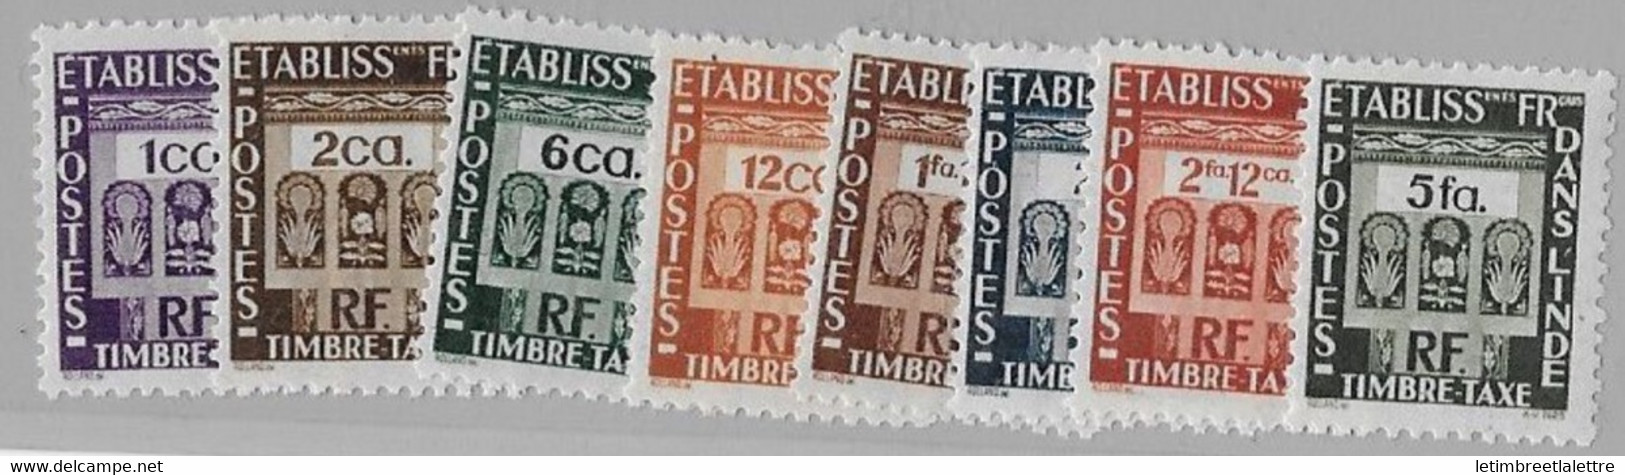 ⭐ Inde - Taxe - YT N° 19 à 27 ** Sans Le 23 - Neuf Sans Charnière - 1948 ⭐ - Unused Stamps